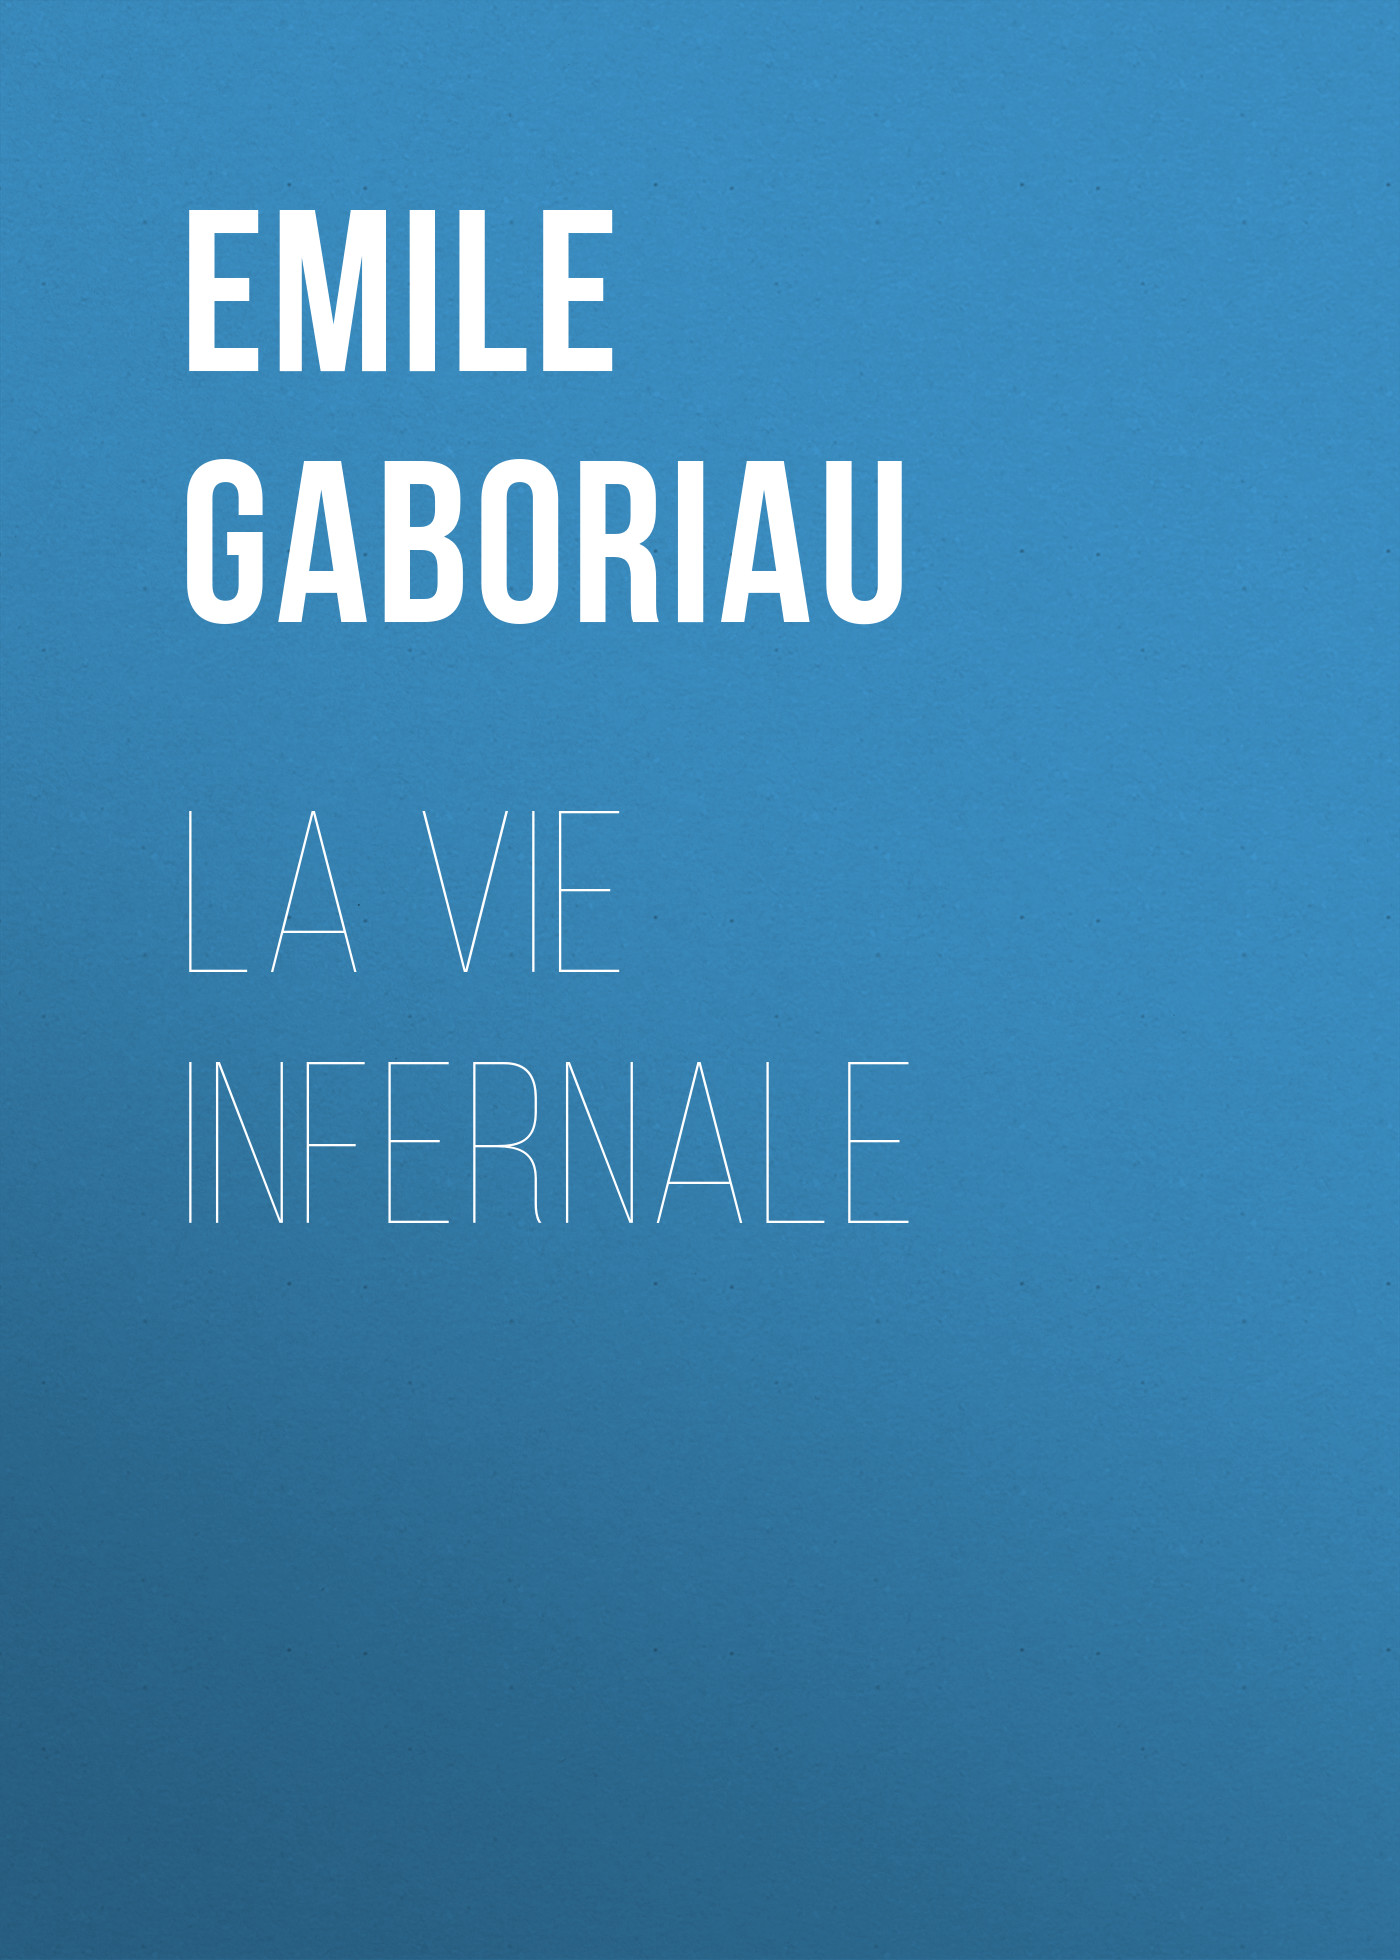 Книга La vie infernale из серии , созданная Emile Gaboriau, может относится к жанру Зарубежная старинная литература, Зарубежная классика. Стоимость электронной книги La vie infernale с идентификатором 24859843 составляет 0 руб.